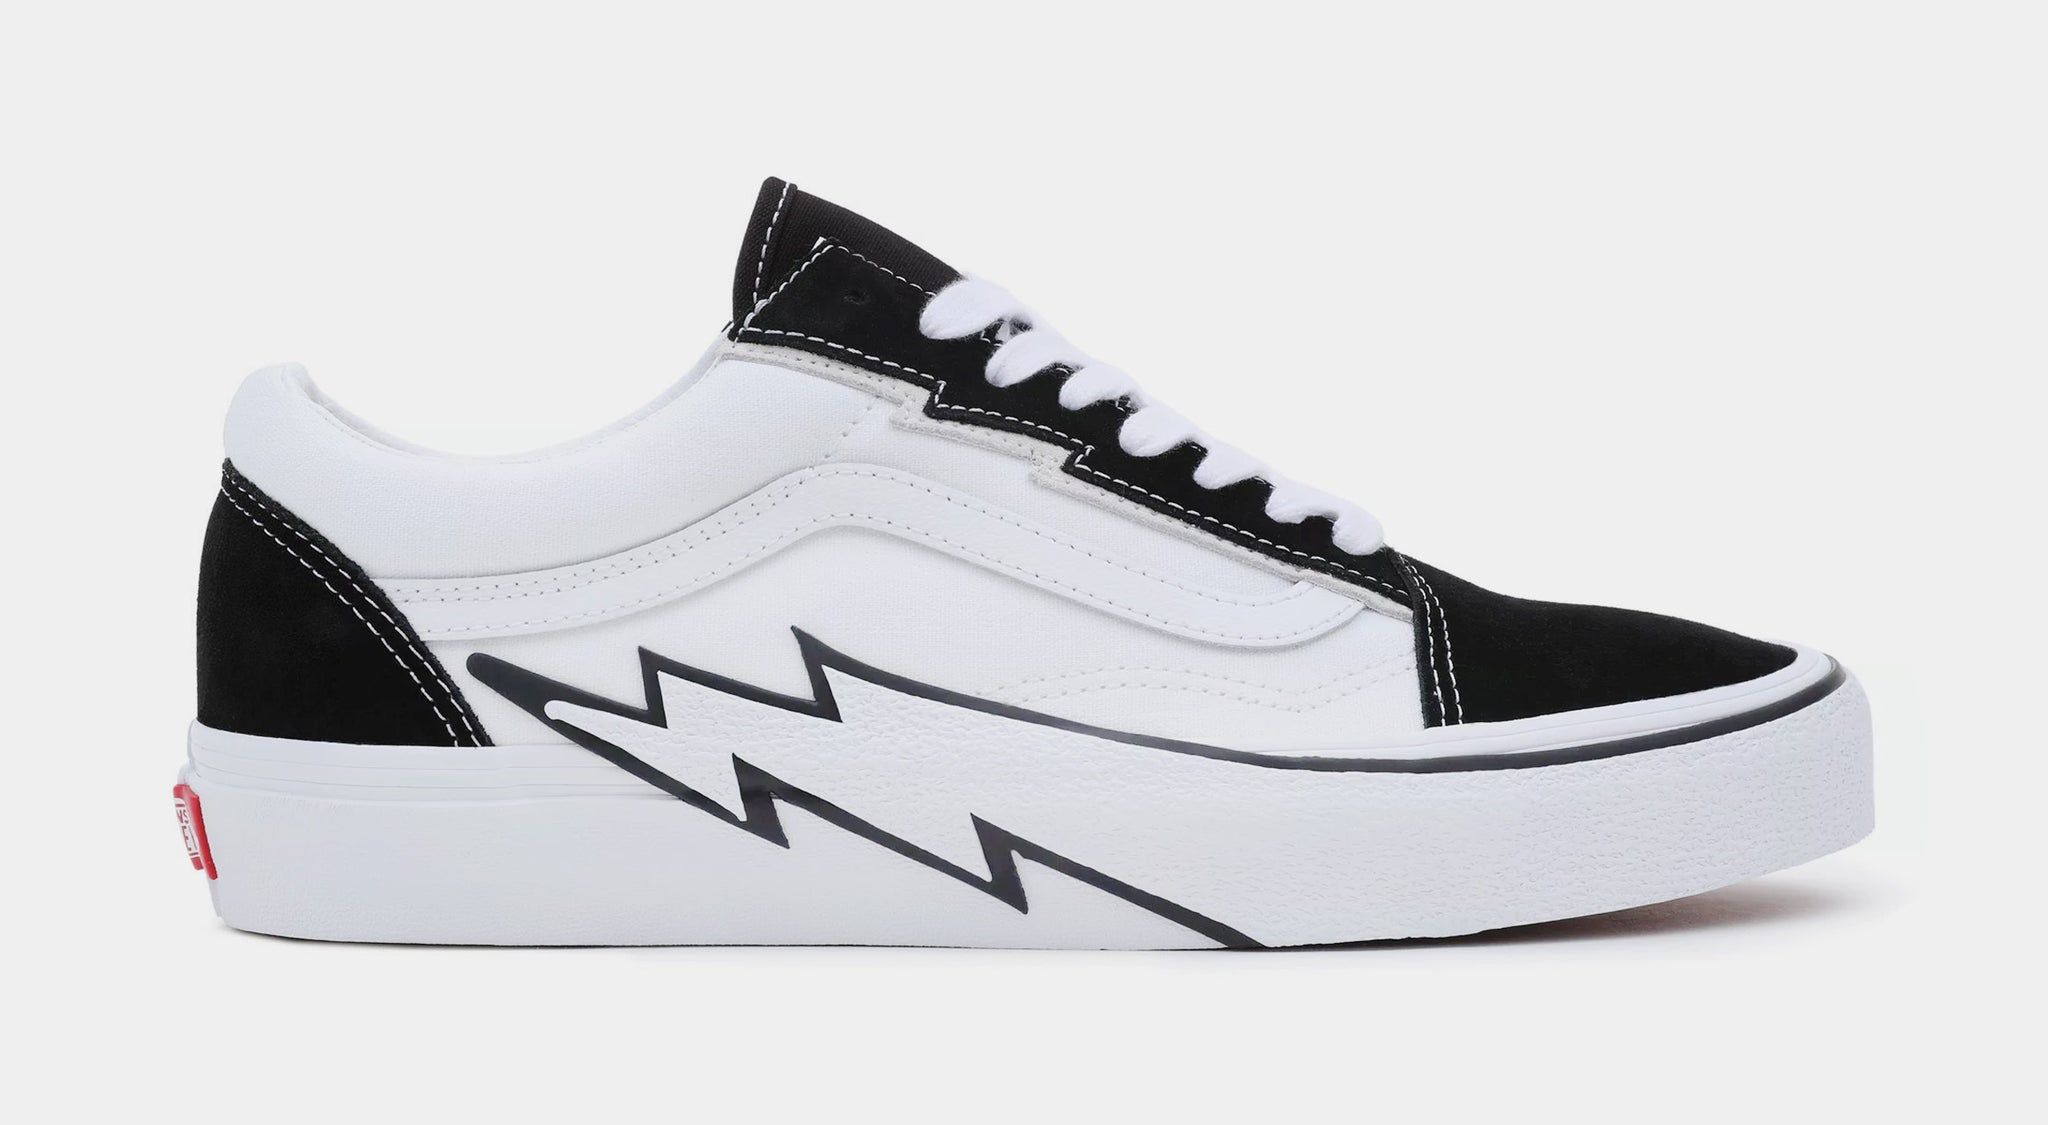 Vans Old Skool Sneakers in Black and White